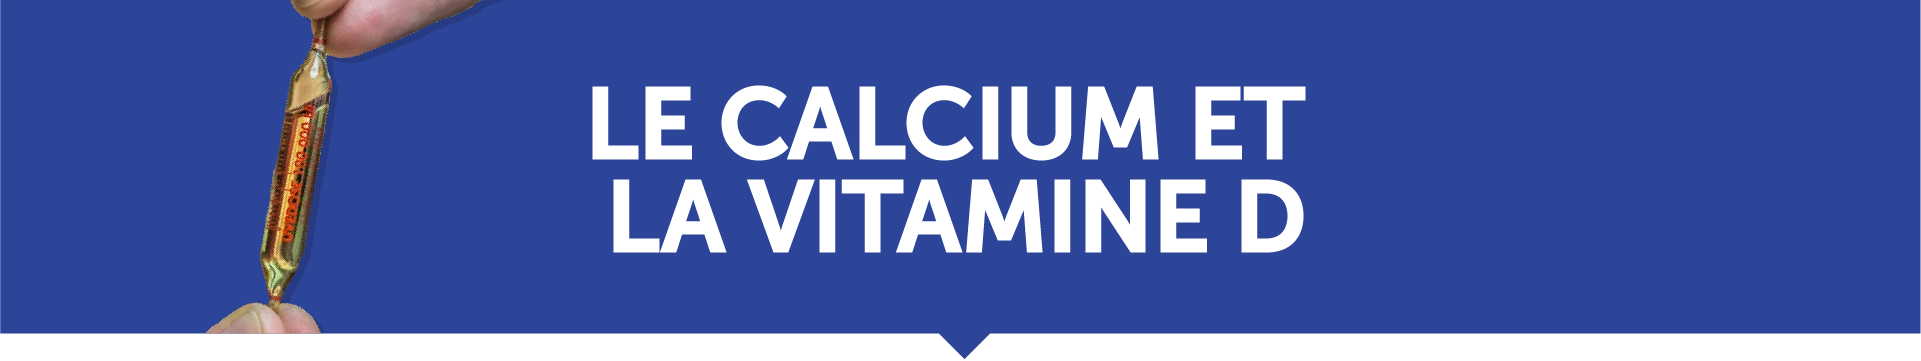 banniere calcium et vitamine D